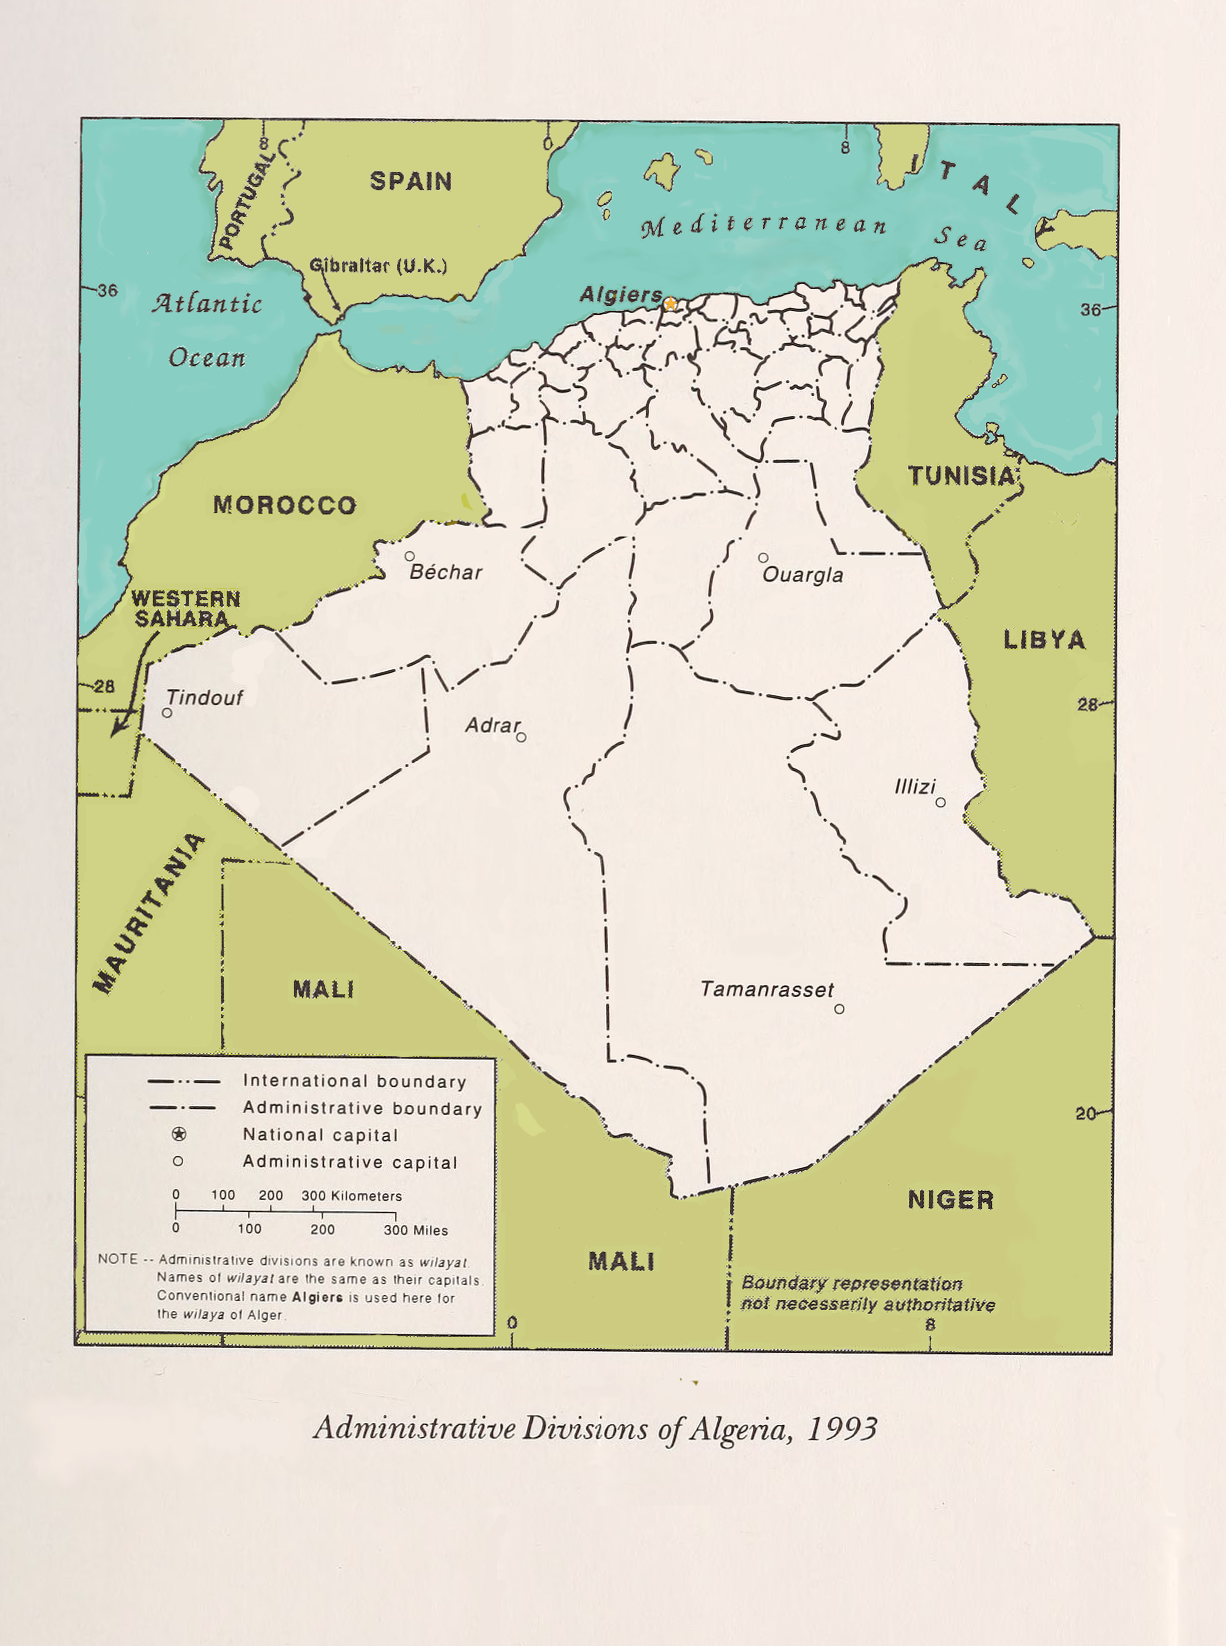 Location of People's Democratic Republic of Algeria